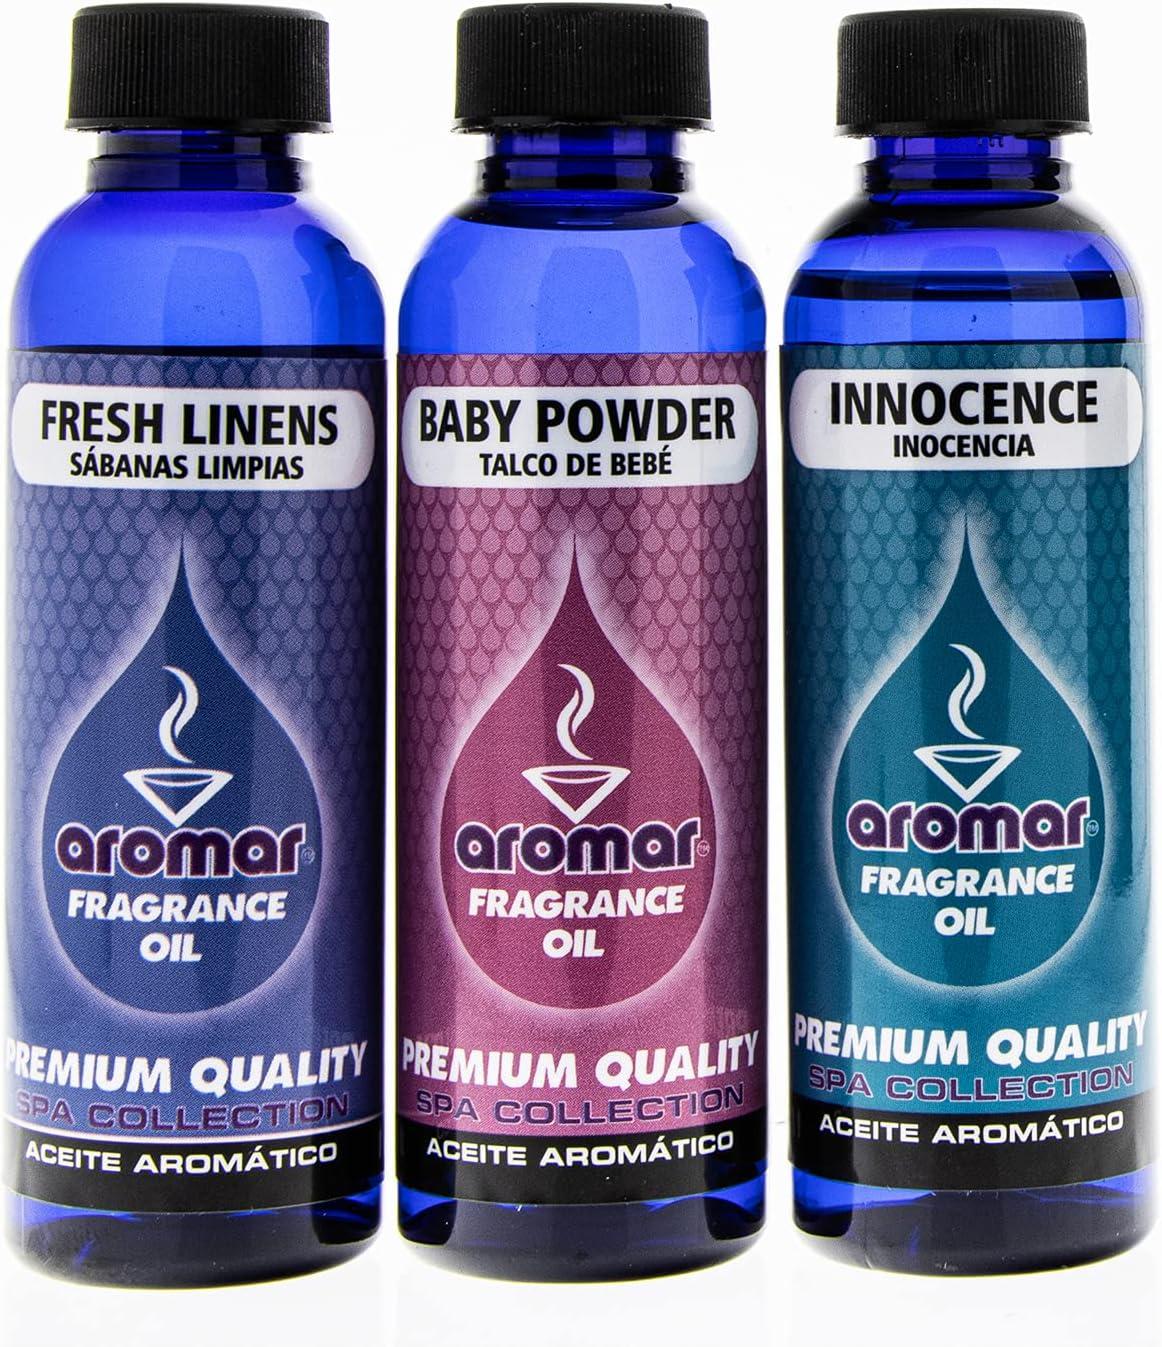 AROMAR Premium Fragrance Oil, 2oz Bottle 3 Pack Long Lasting